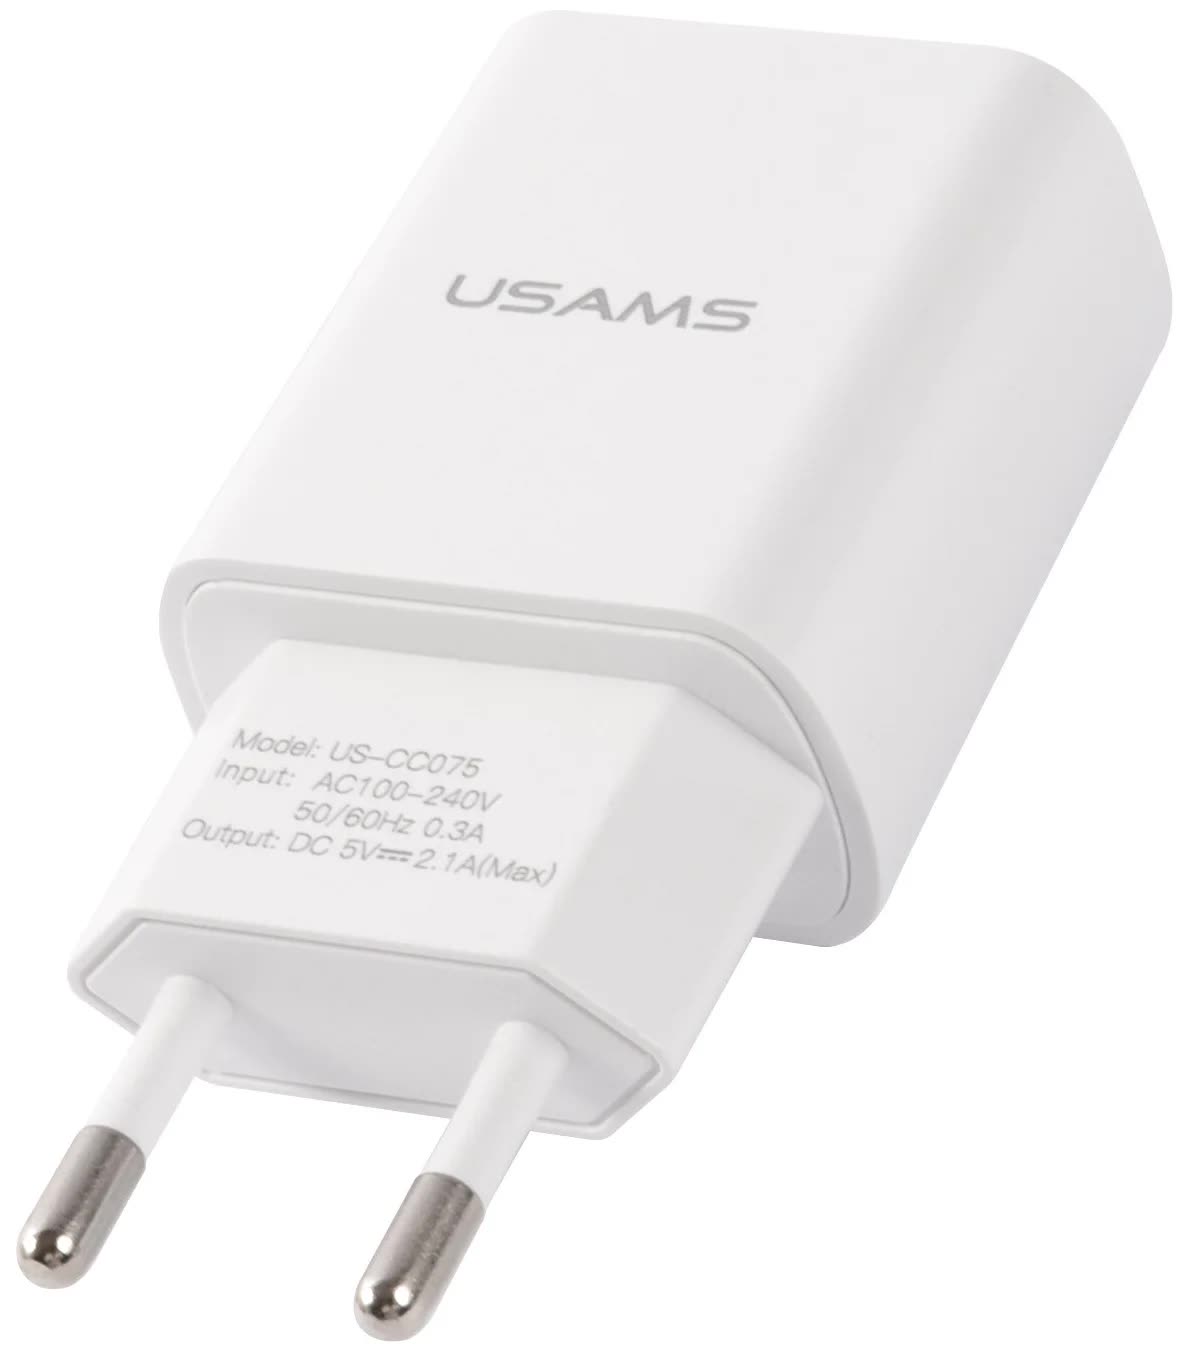 Сетевое зарядное устройство USAMS - (Модель T21 Charger kit) 1 USB T18 2,1A + кабель Lightning 1m, белый (T21OCLN01) сетевое зарядное устройство usams модель t21 charger kit 1 usb t18 2 1a кабель micro usb 1m белый t21ocmc01